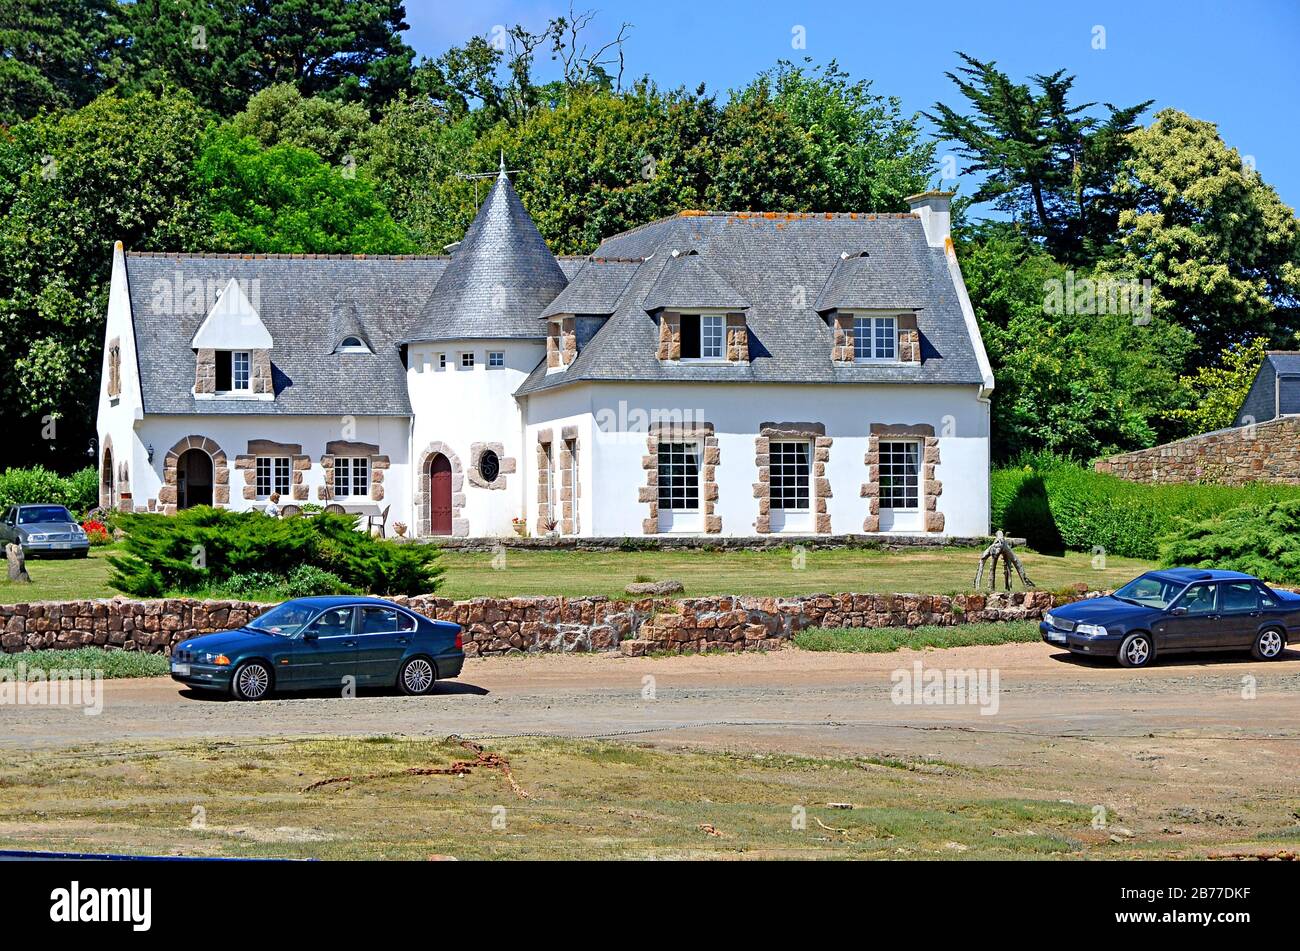 Grand château comme maison typique avec une petite tour en Bretagne, France. Motif breton Banque D'Images